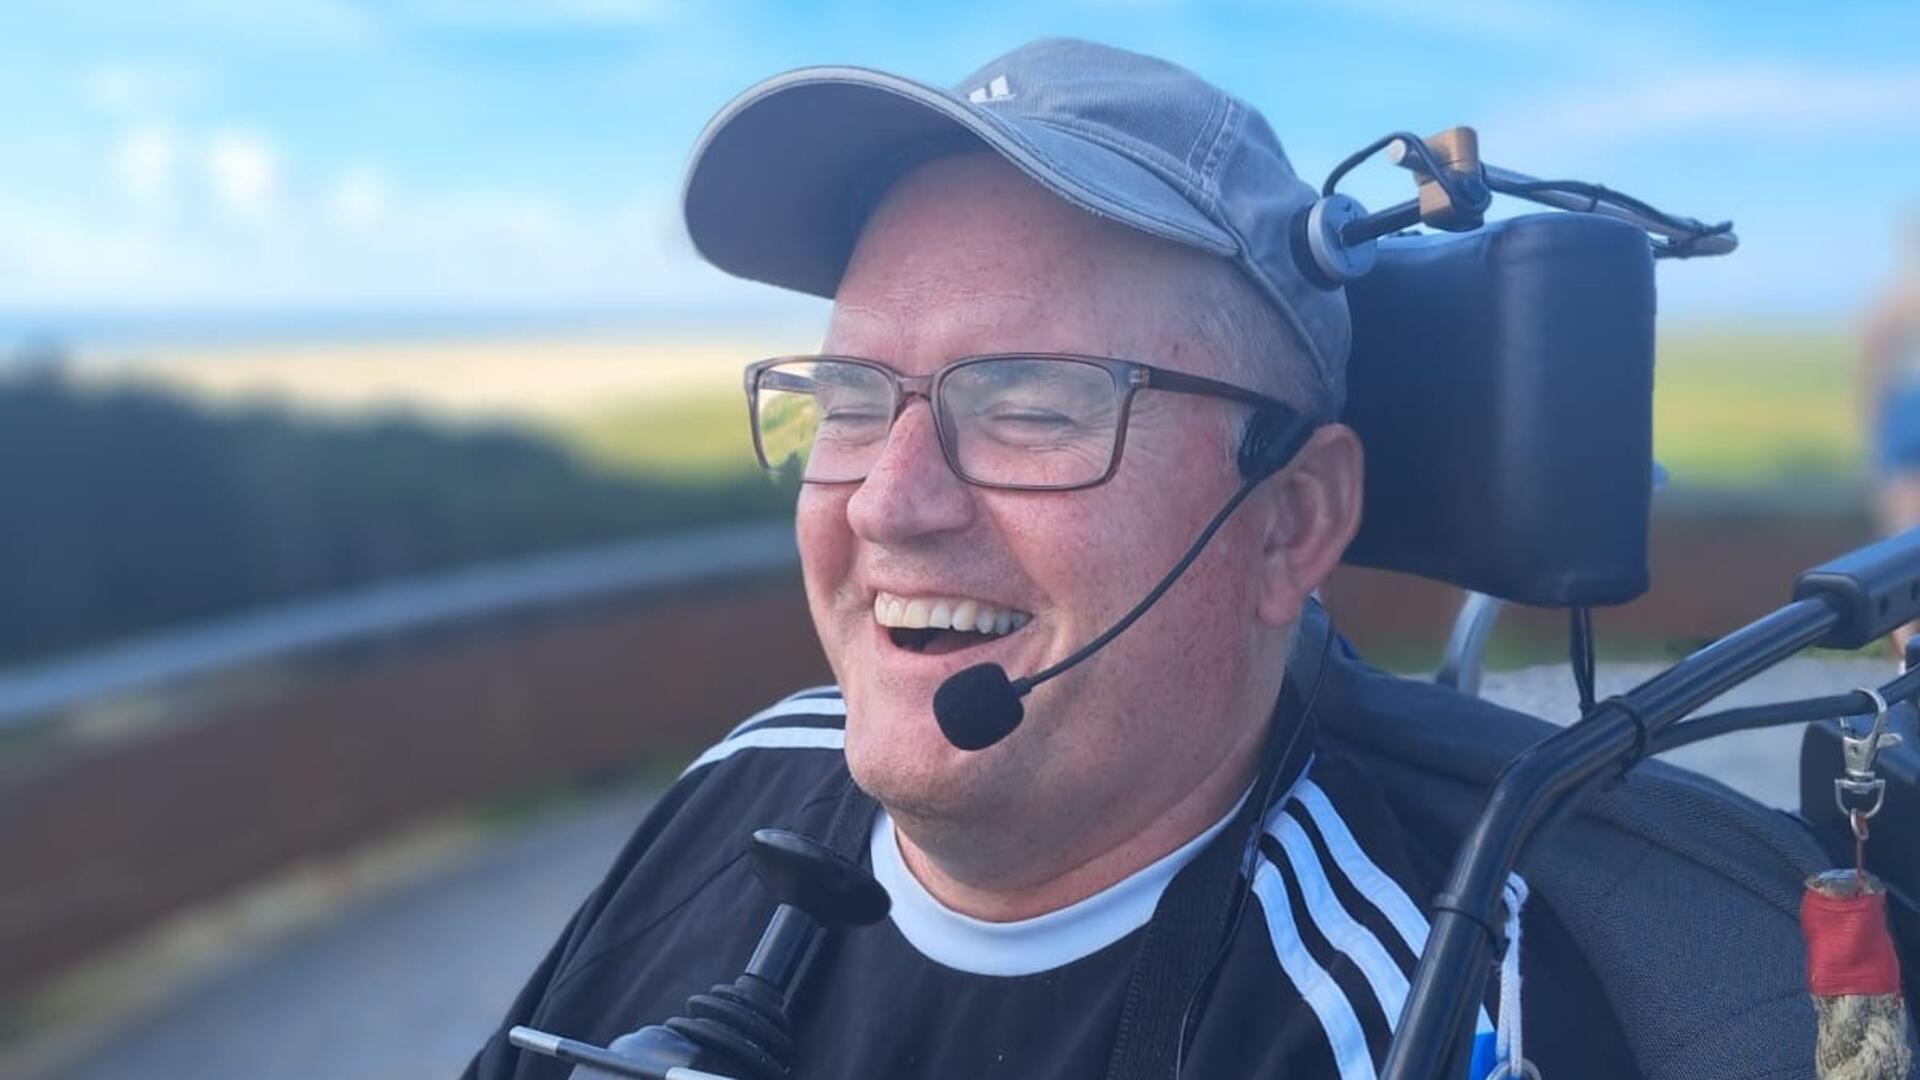 Geert Jan den Hengst lacht. Hij heeft een petje en een bril op en zit in een rolstoel.